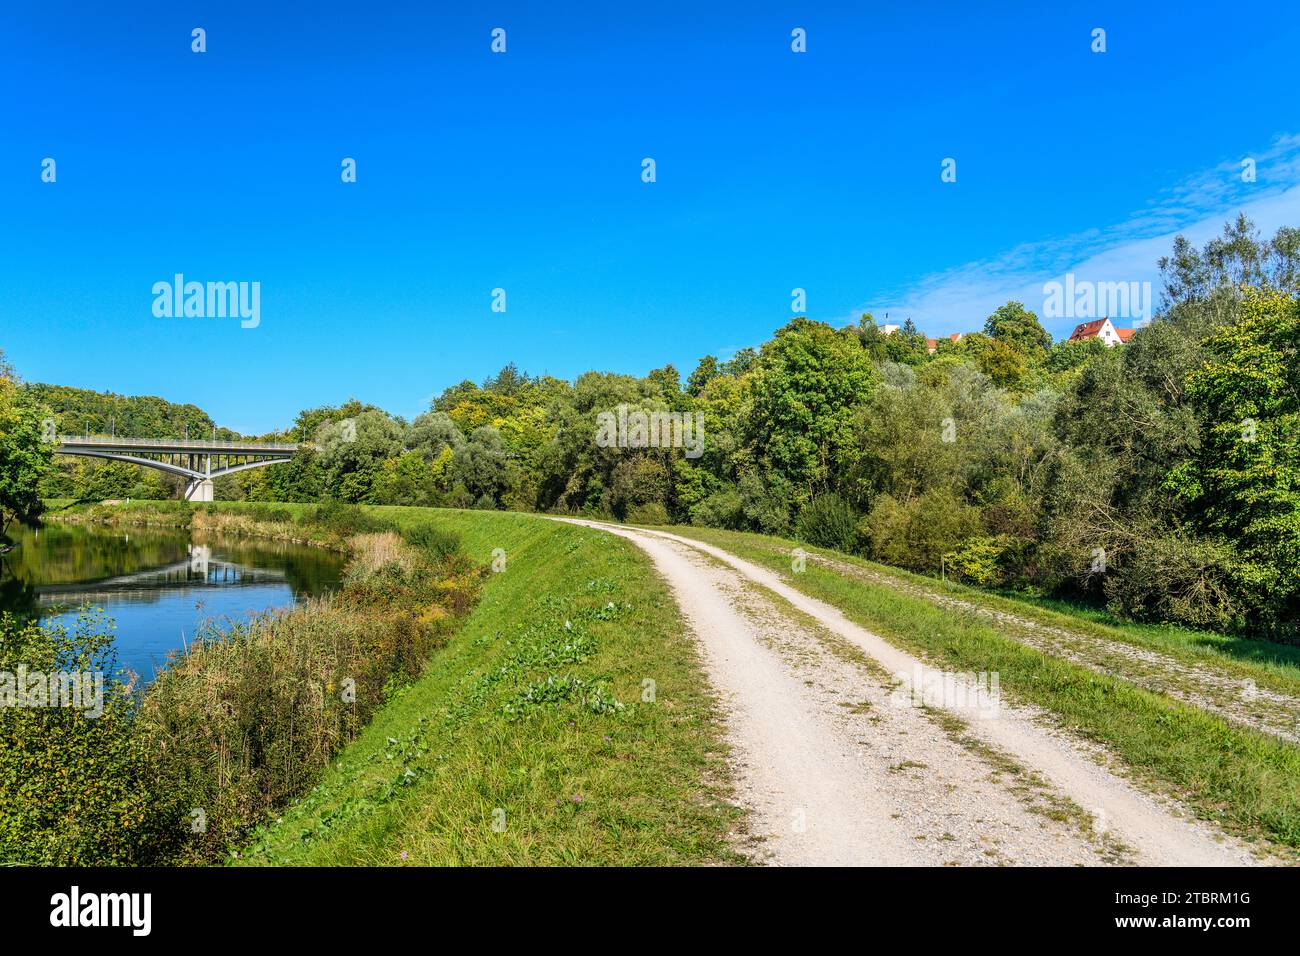 Germany, Bavaria, Munich district, Grünwald, Isar valley, Isarwerk canal with Grünwald bridge, Grünwald castle and castle hotel Stock Photo